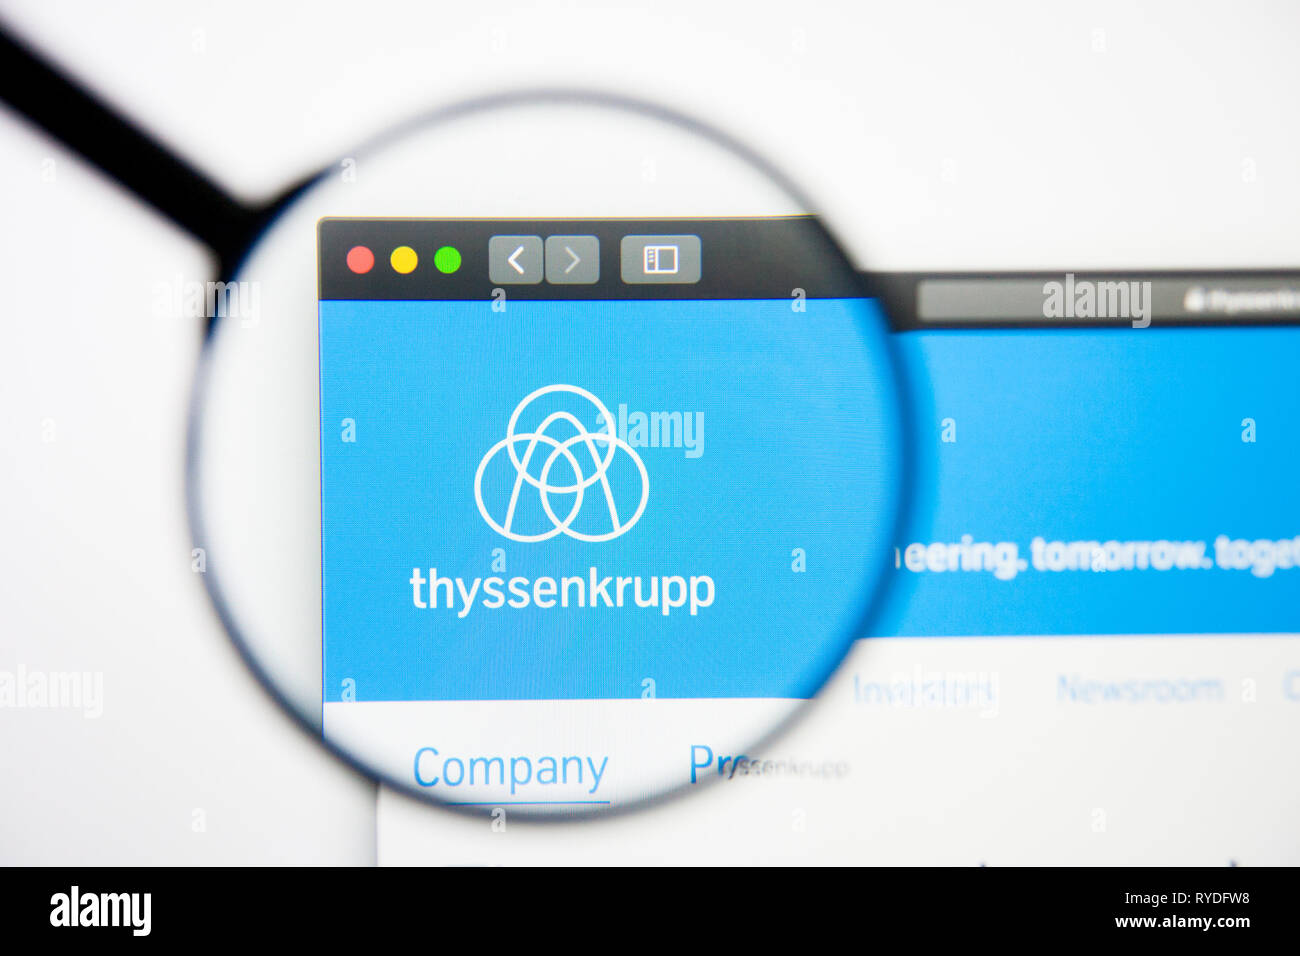 Los Angeles, Kalifornien, USA - 5. März 2019: ThyssenKrupp Konzern Website Homepage. ThyssenKrupp Konzern Logo sichtbar auf dem Display, Illustrative Stockfoto